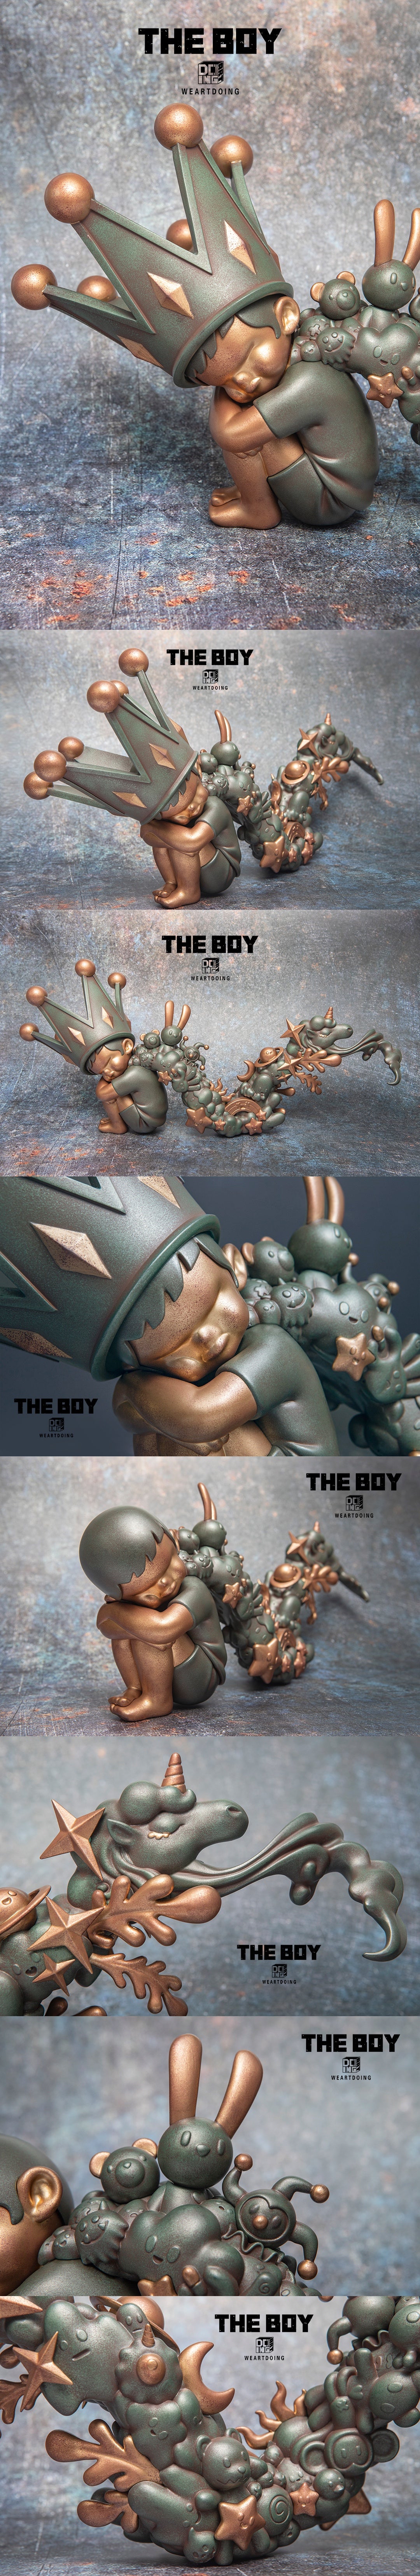 The Boy-Dreams-Bronze Age